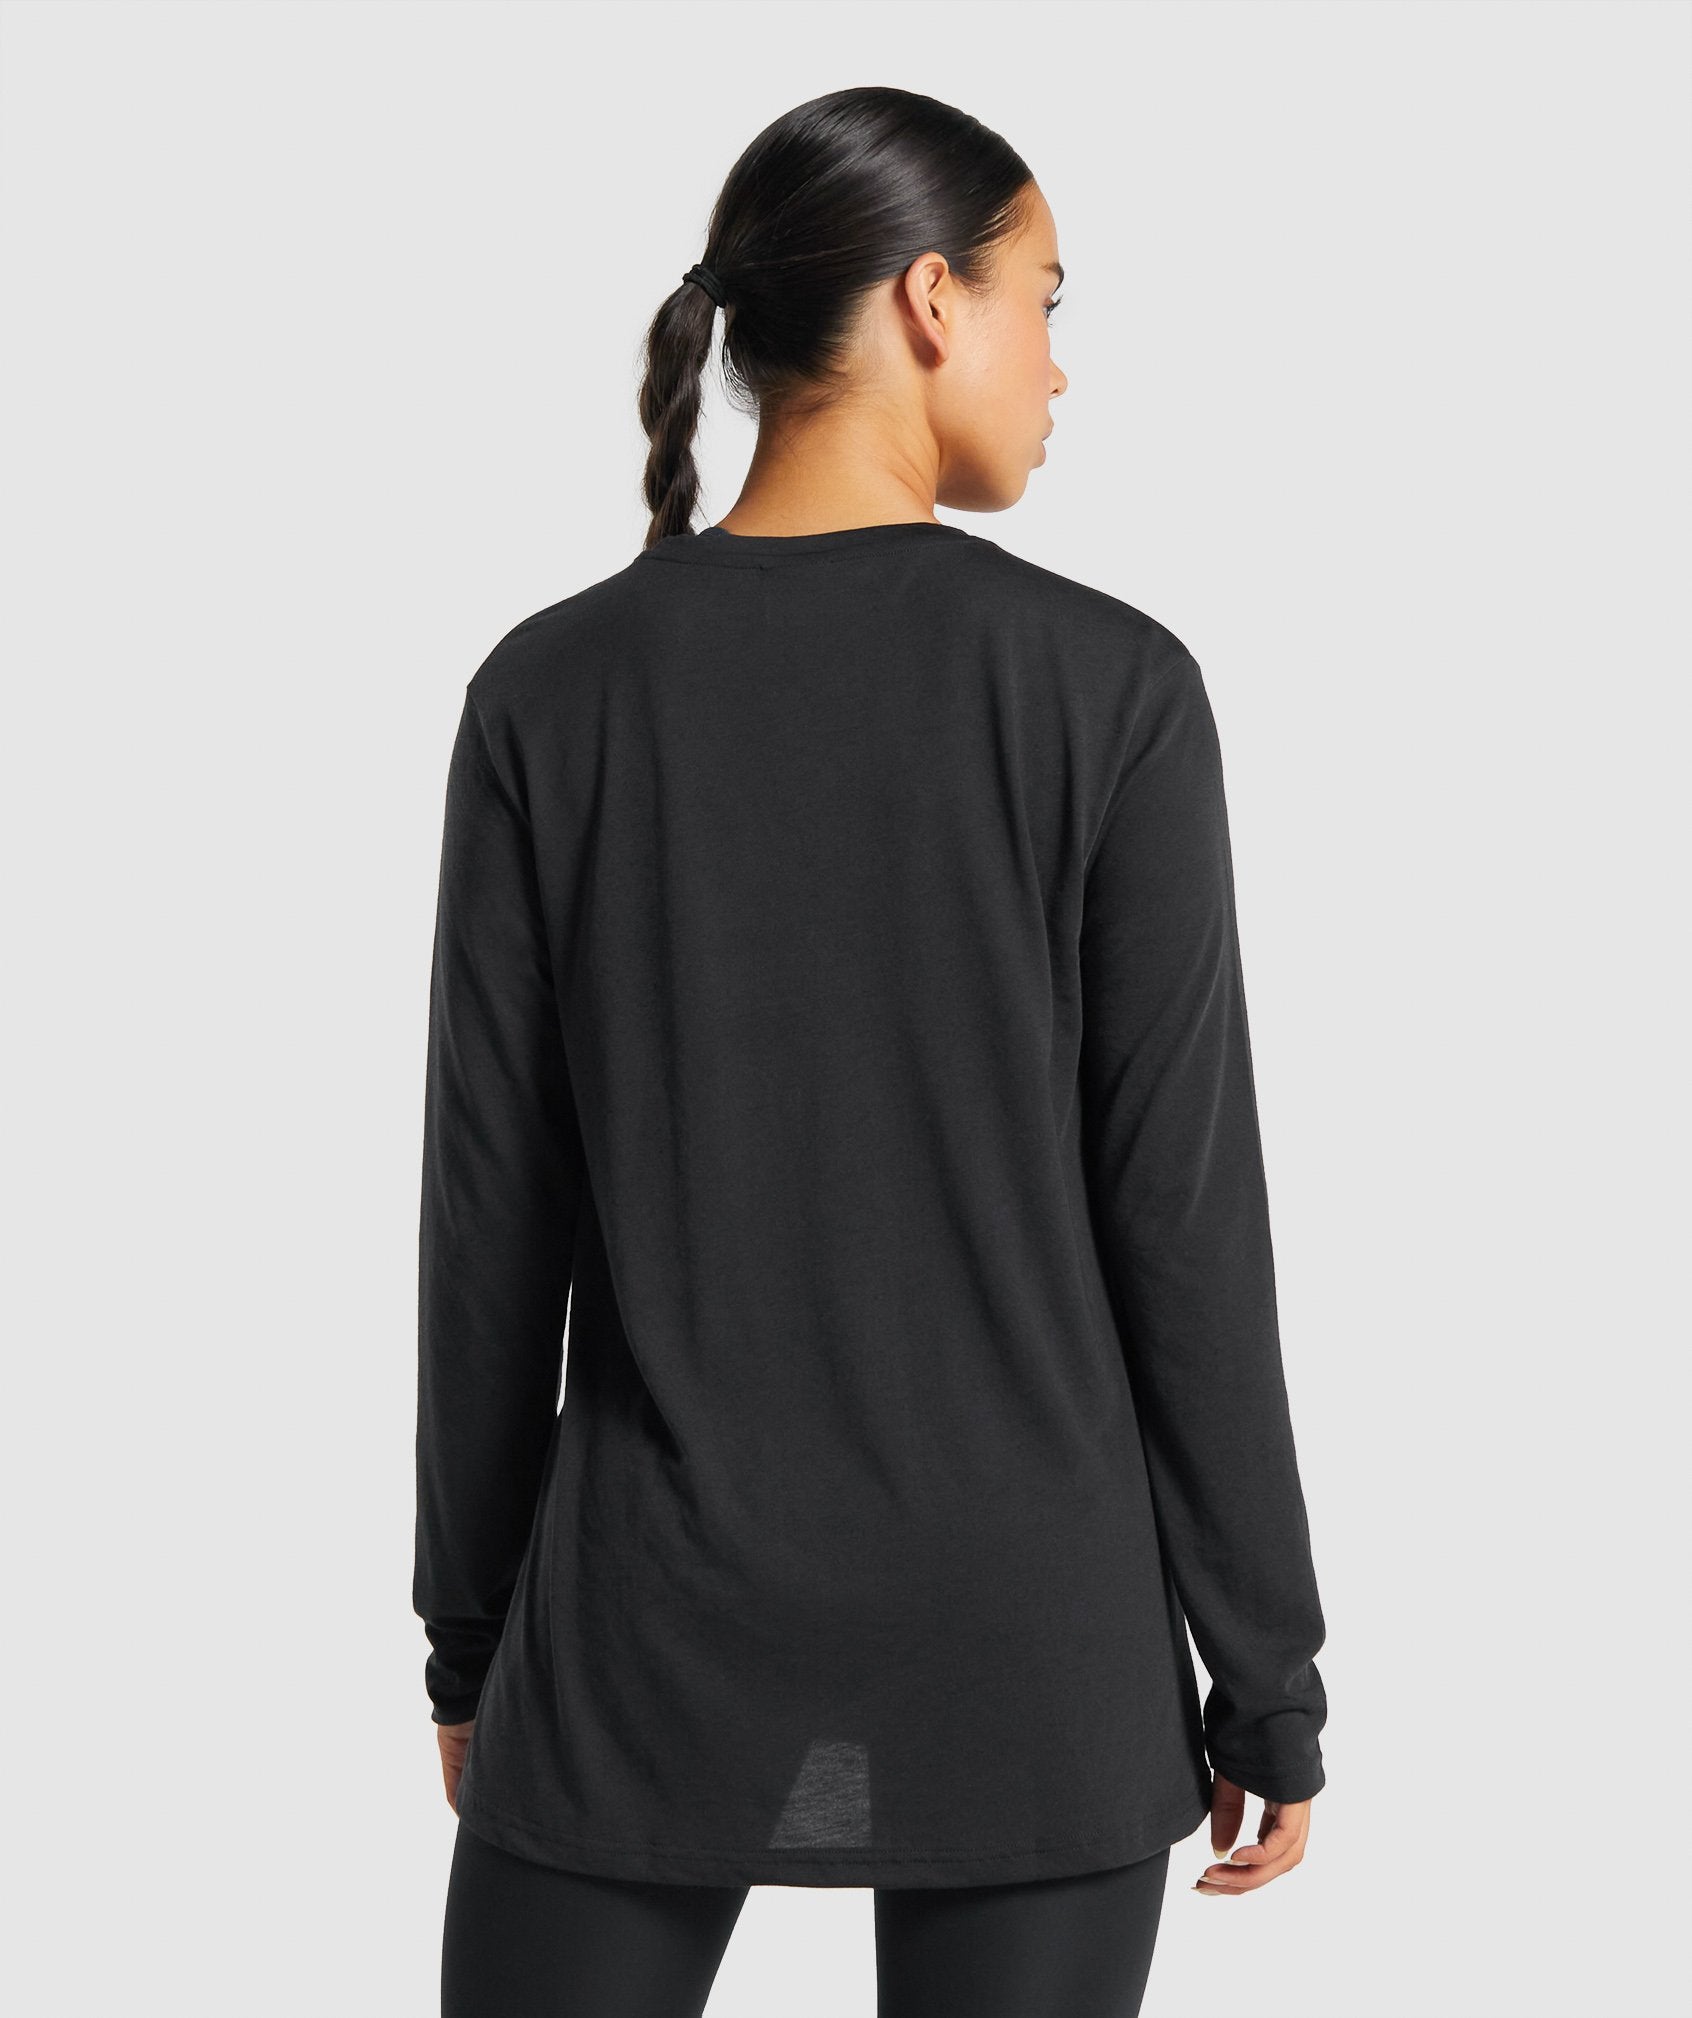 Gymshark Black Full Sleeve T-Shirt